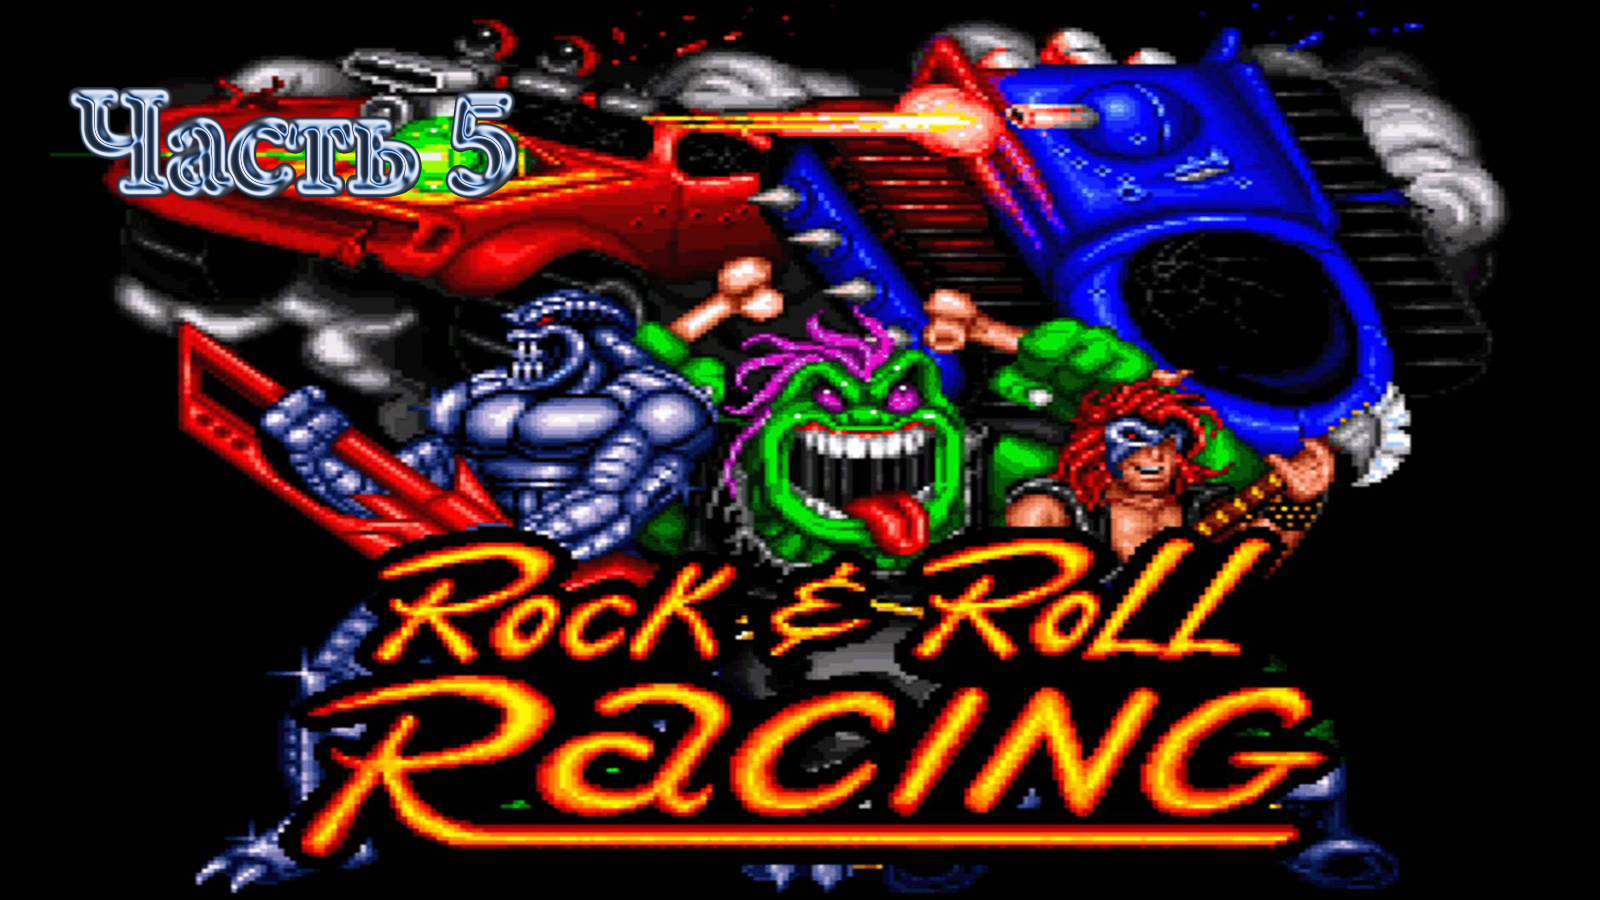 Rock n roll racing steam